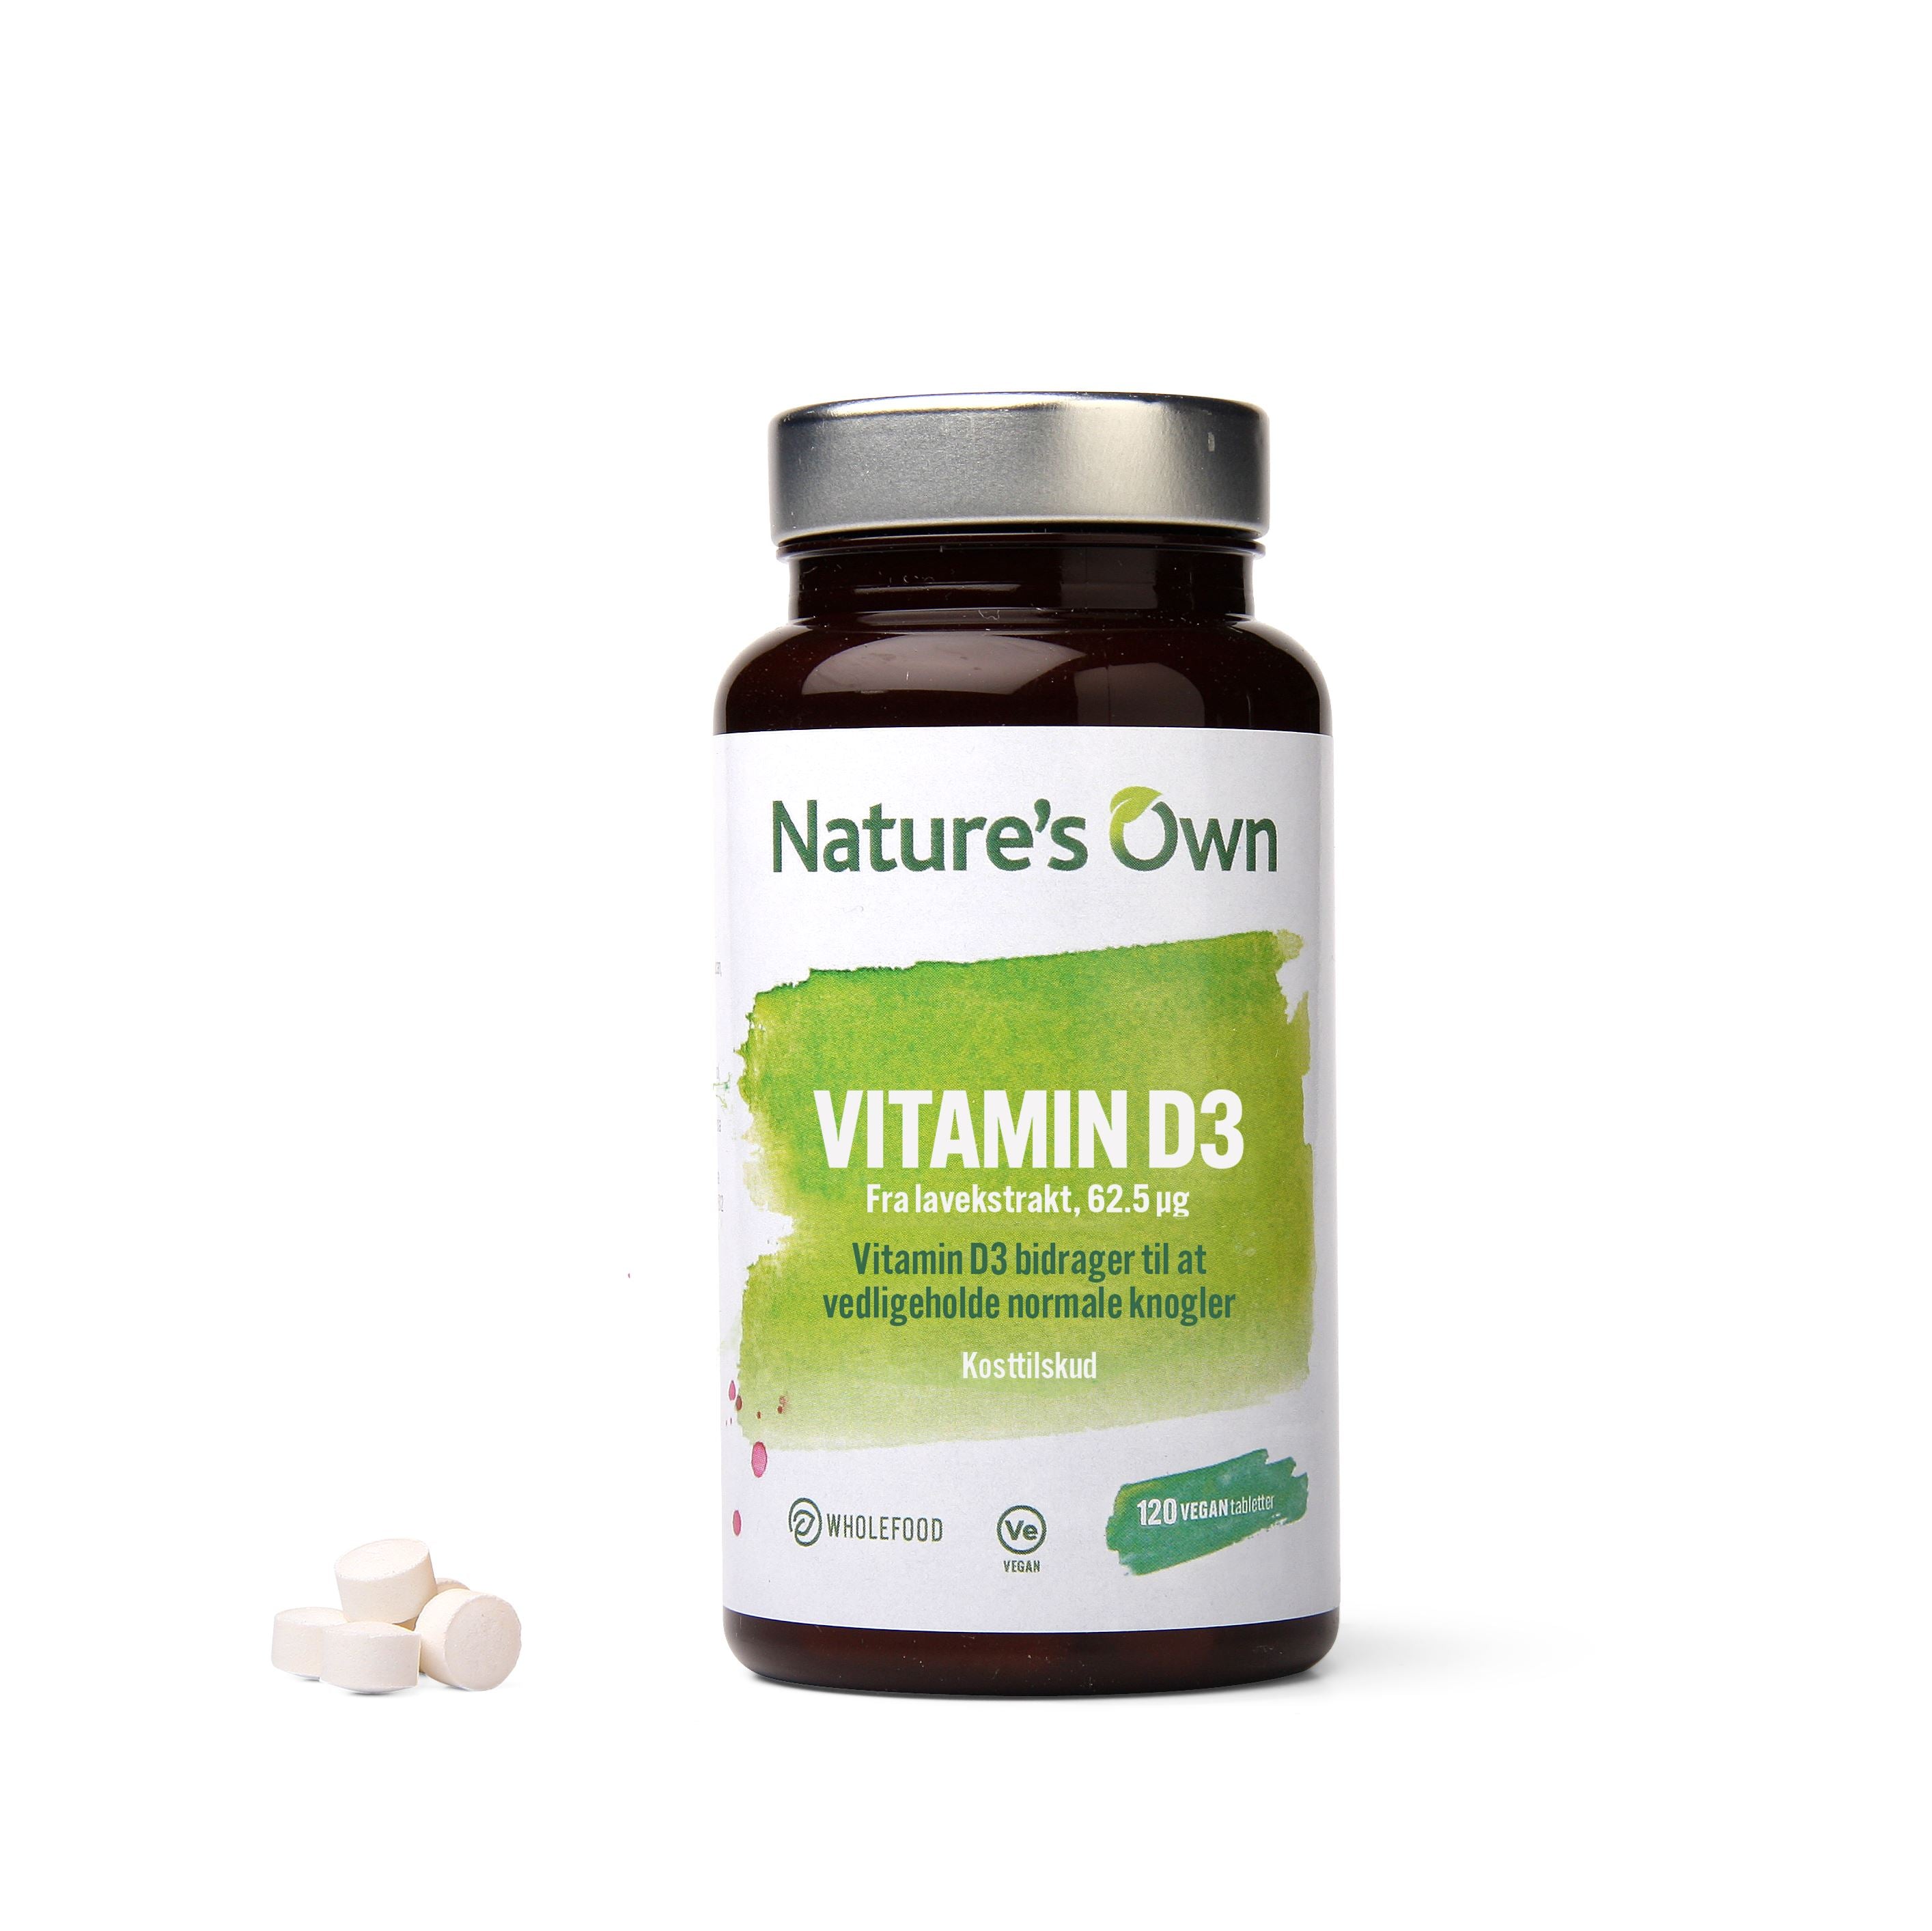 Nature's Own Vitamin D3 vegan udvundet af lavekstrakt (120 stk)